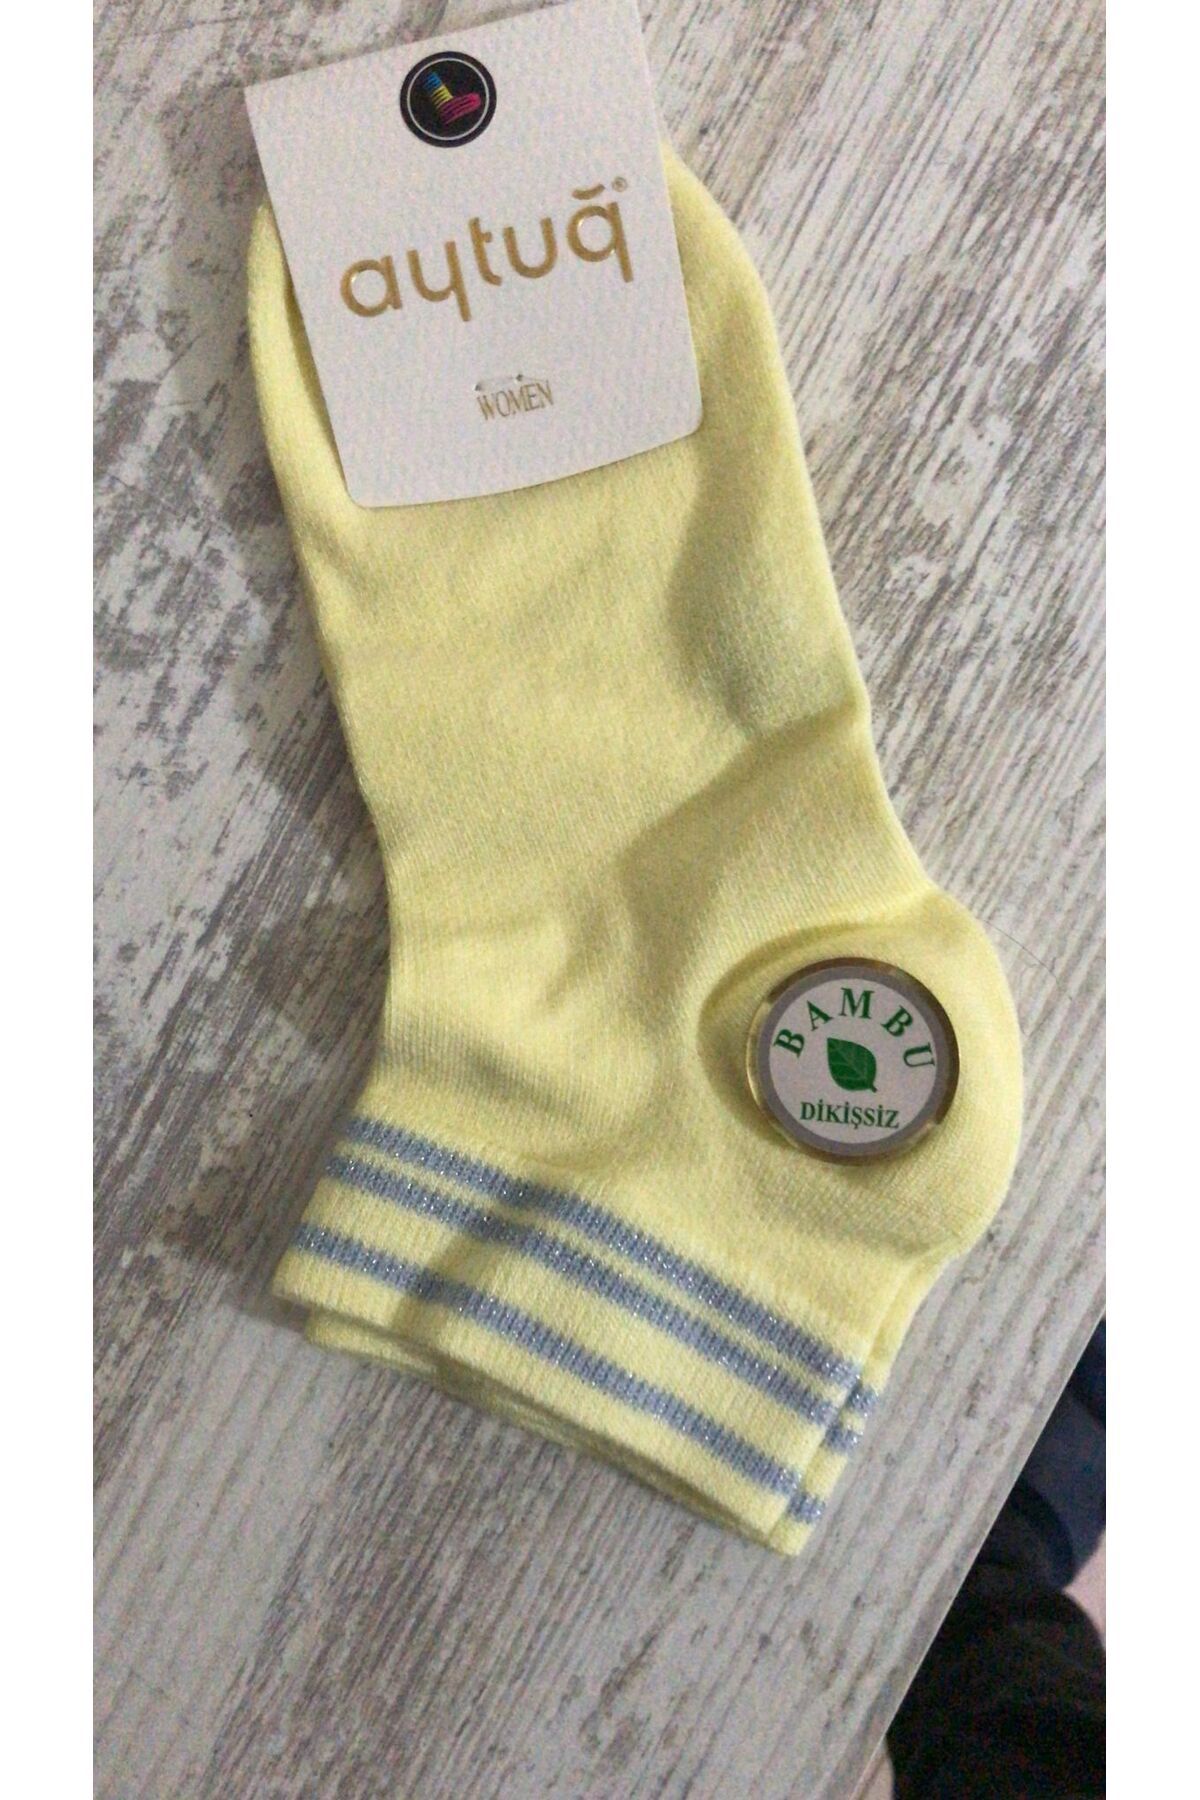 Aytuğ Çorap 4 Çift ,sarı,krem,lacivert,siyah